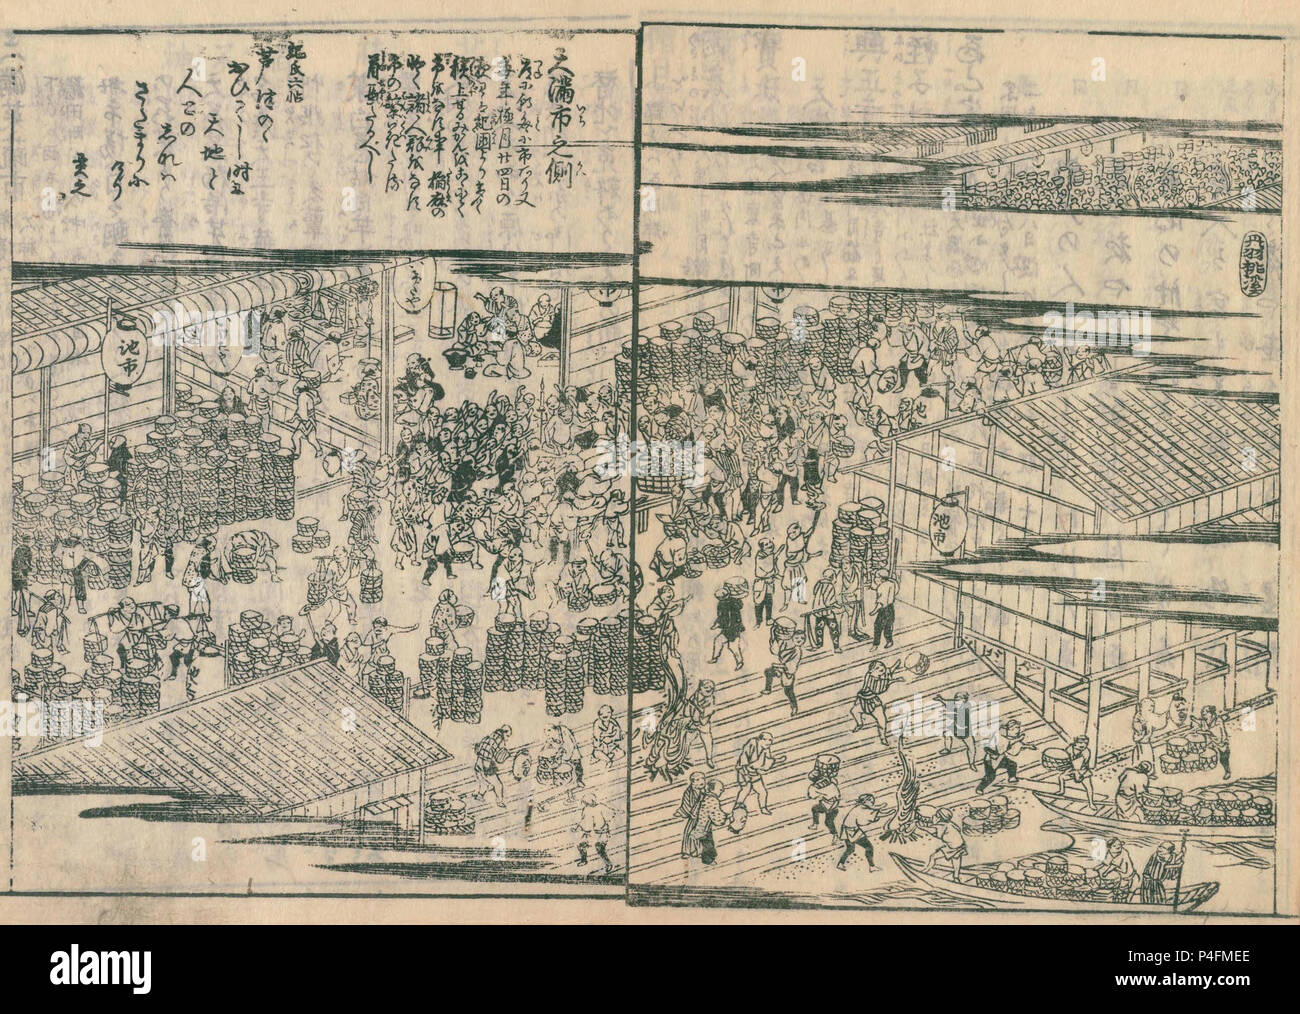 Tenma Fresh Market, de Settsu meisho zue, publié en 1798 Banque D'Images